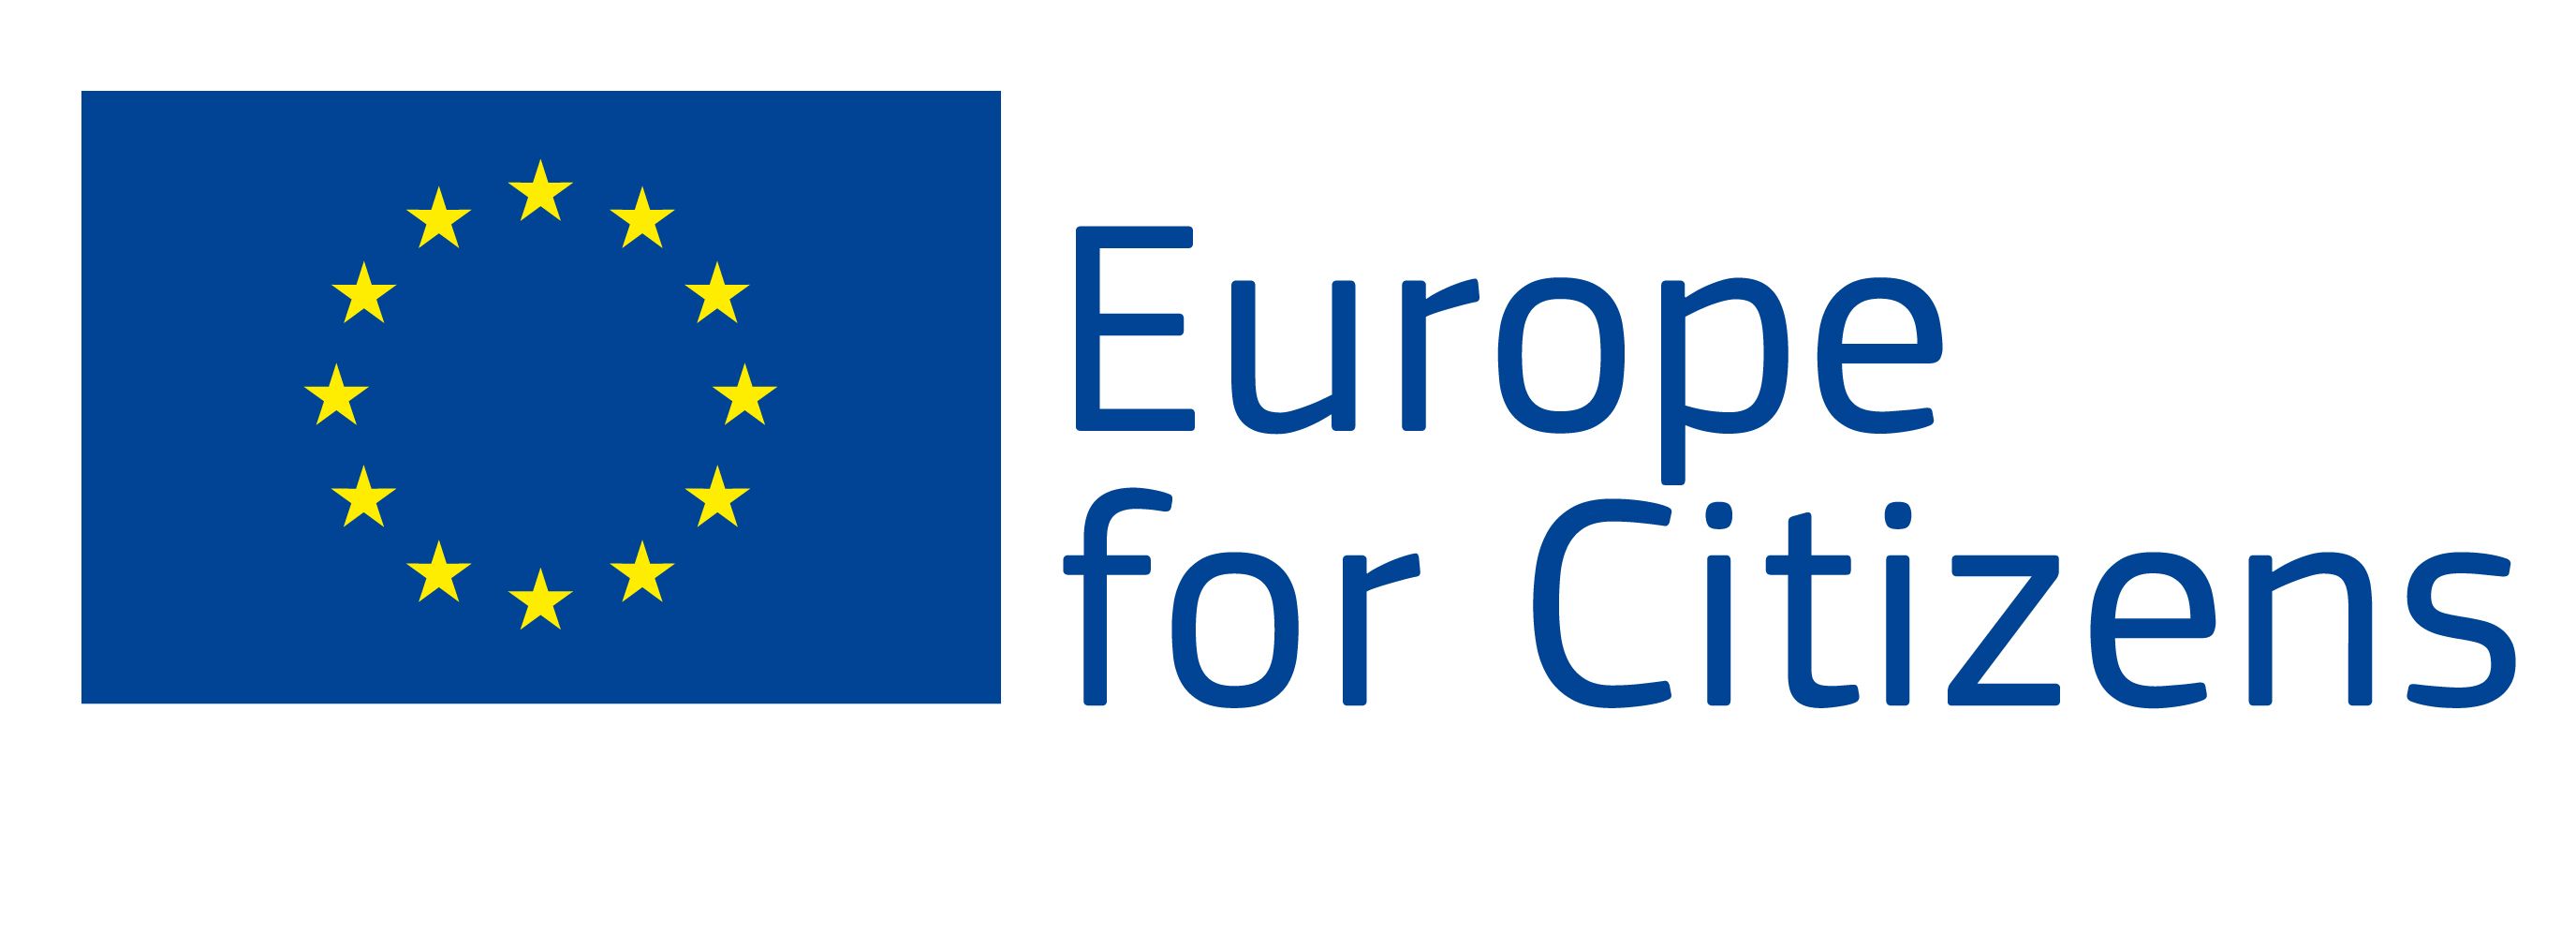 eu flag europe for citizens en.jpg